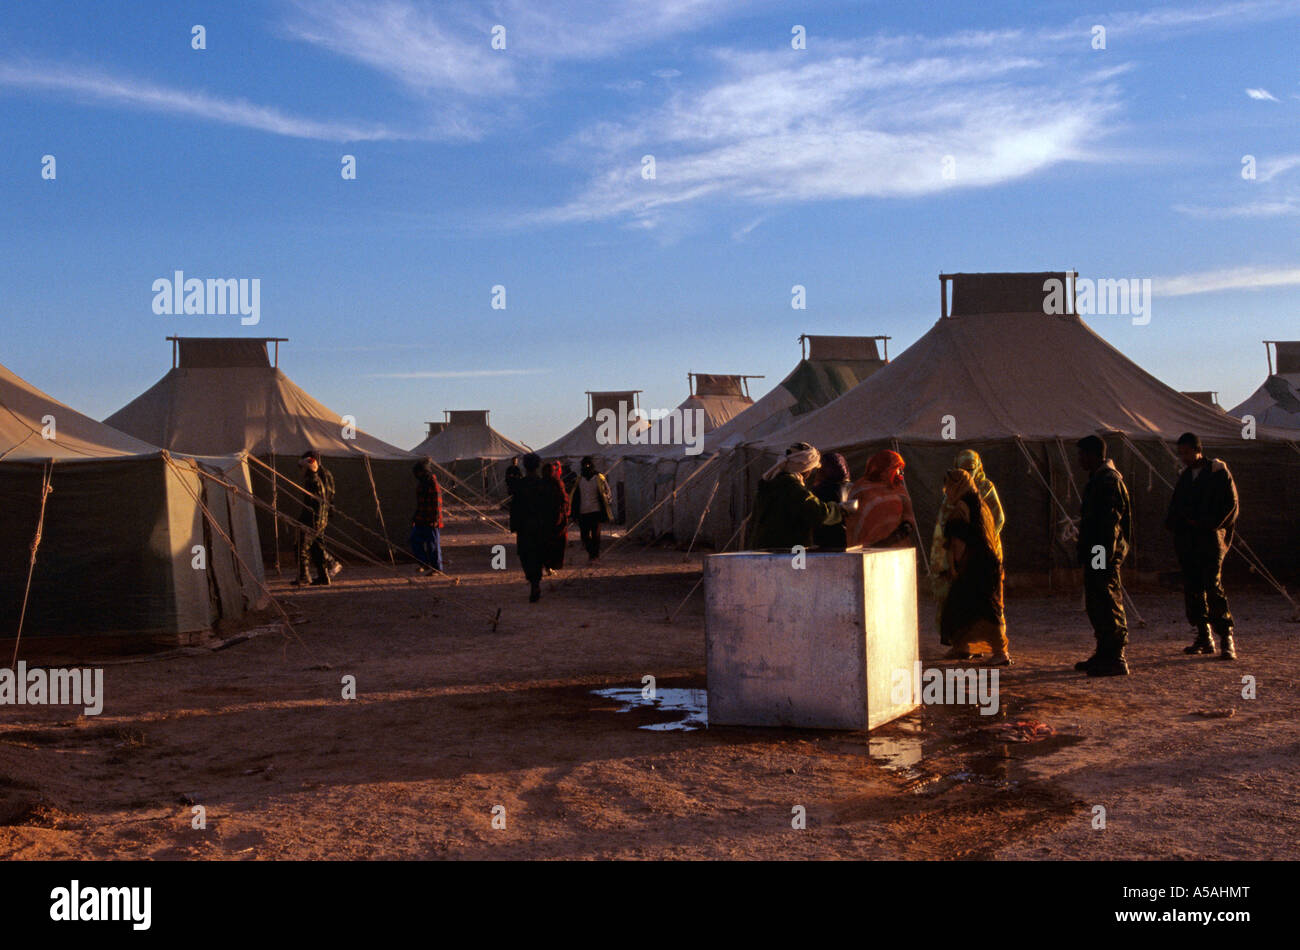 Les réfugiés sahraouis dans un camp de réfugiés de Tindouf en Algérie de l'Ouest Banque D'Images